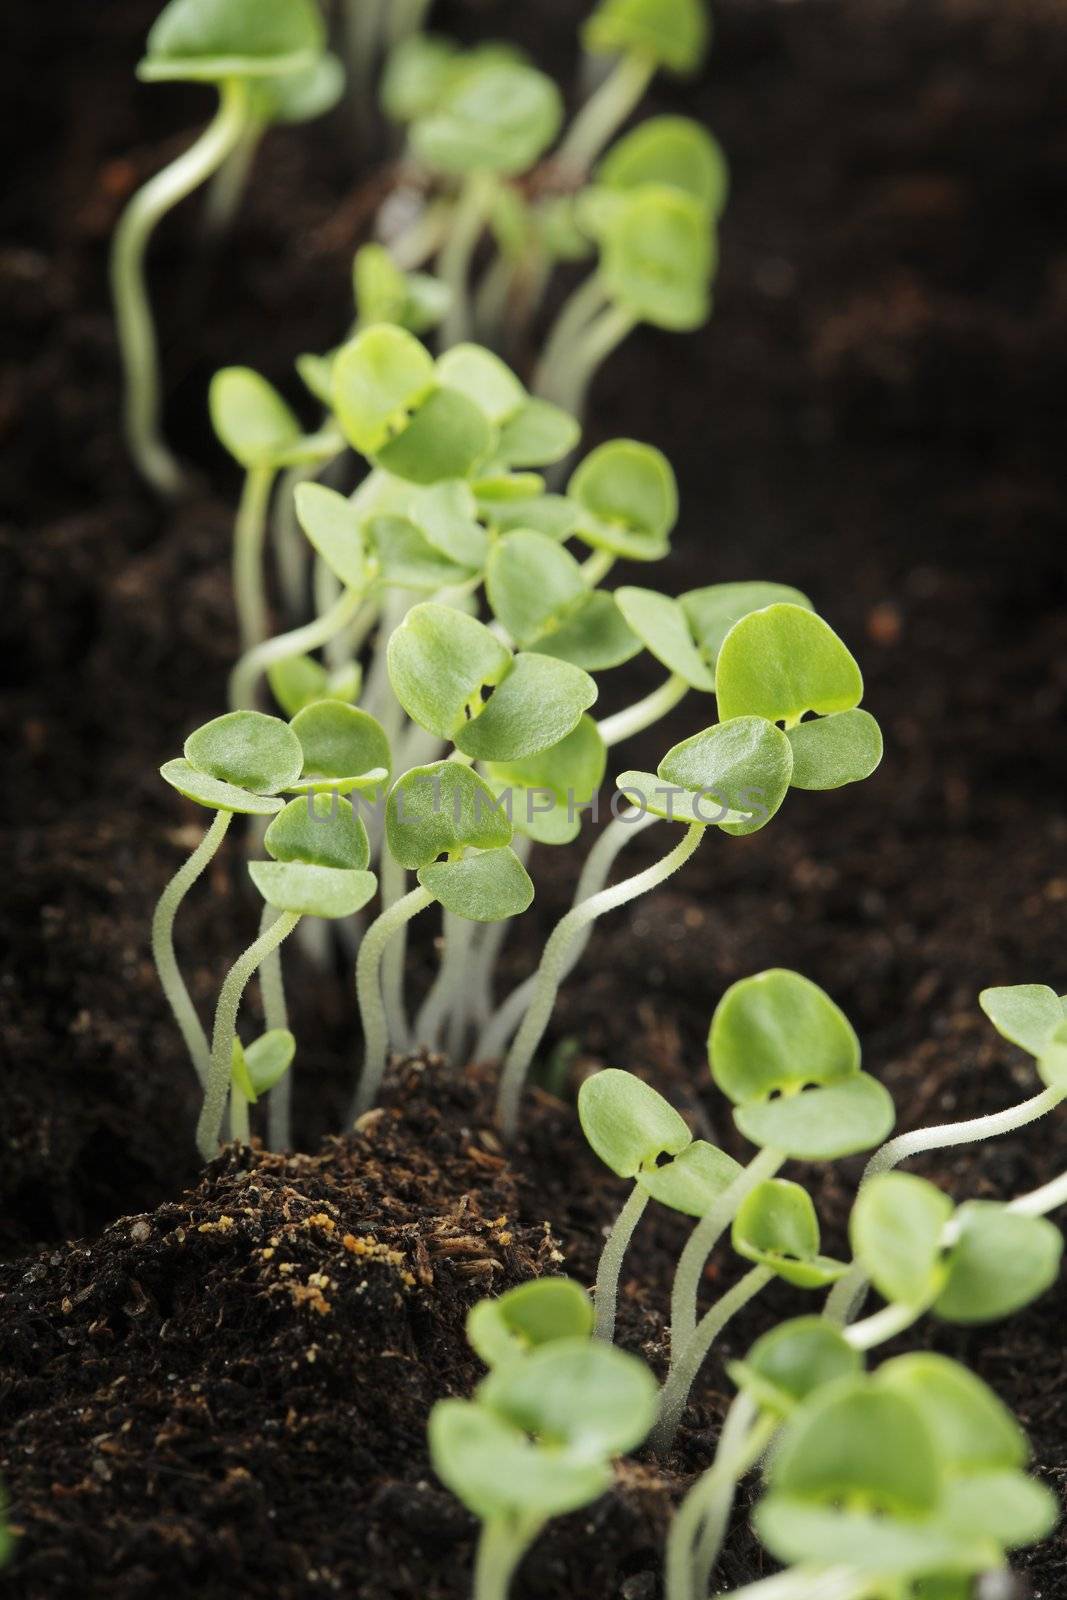 Basil seedlings by Stocksnapper